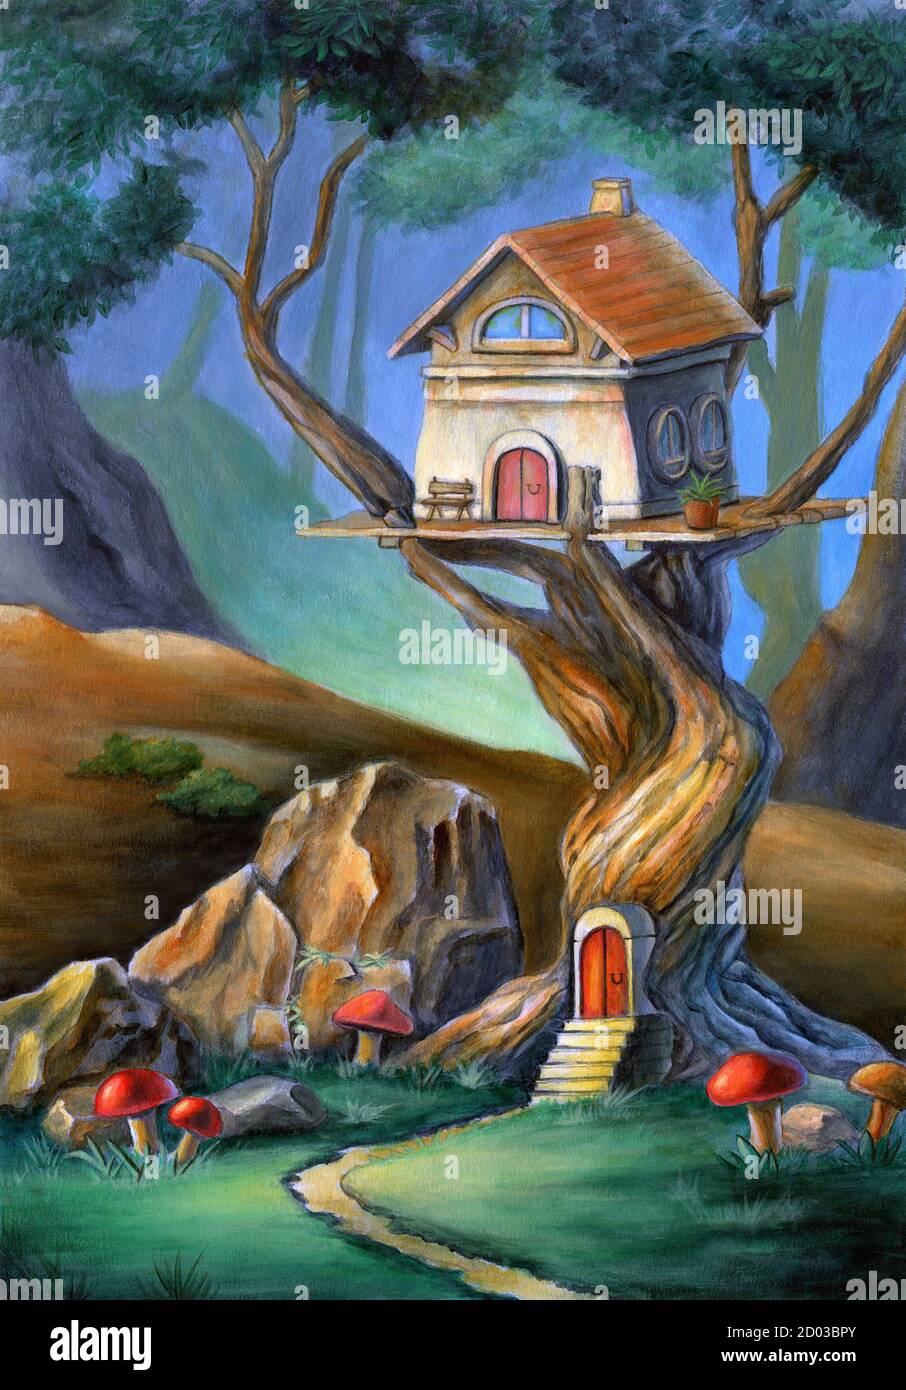 Fantasy-Szene mit einem niedlichen Haus auf einem Baum. Mischtechnik Illustration, Acryl und Buntstift auf Papier. Stockfoto